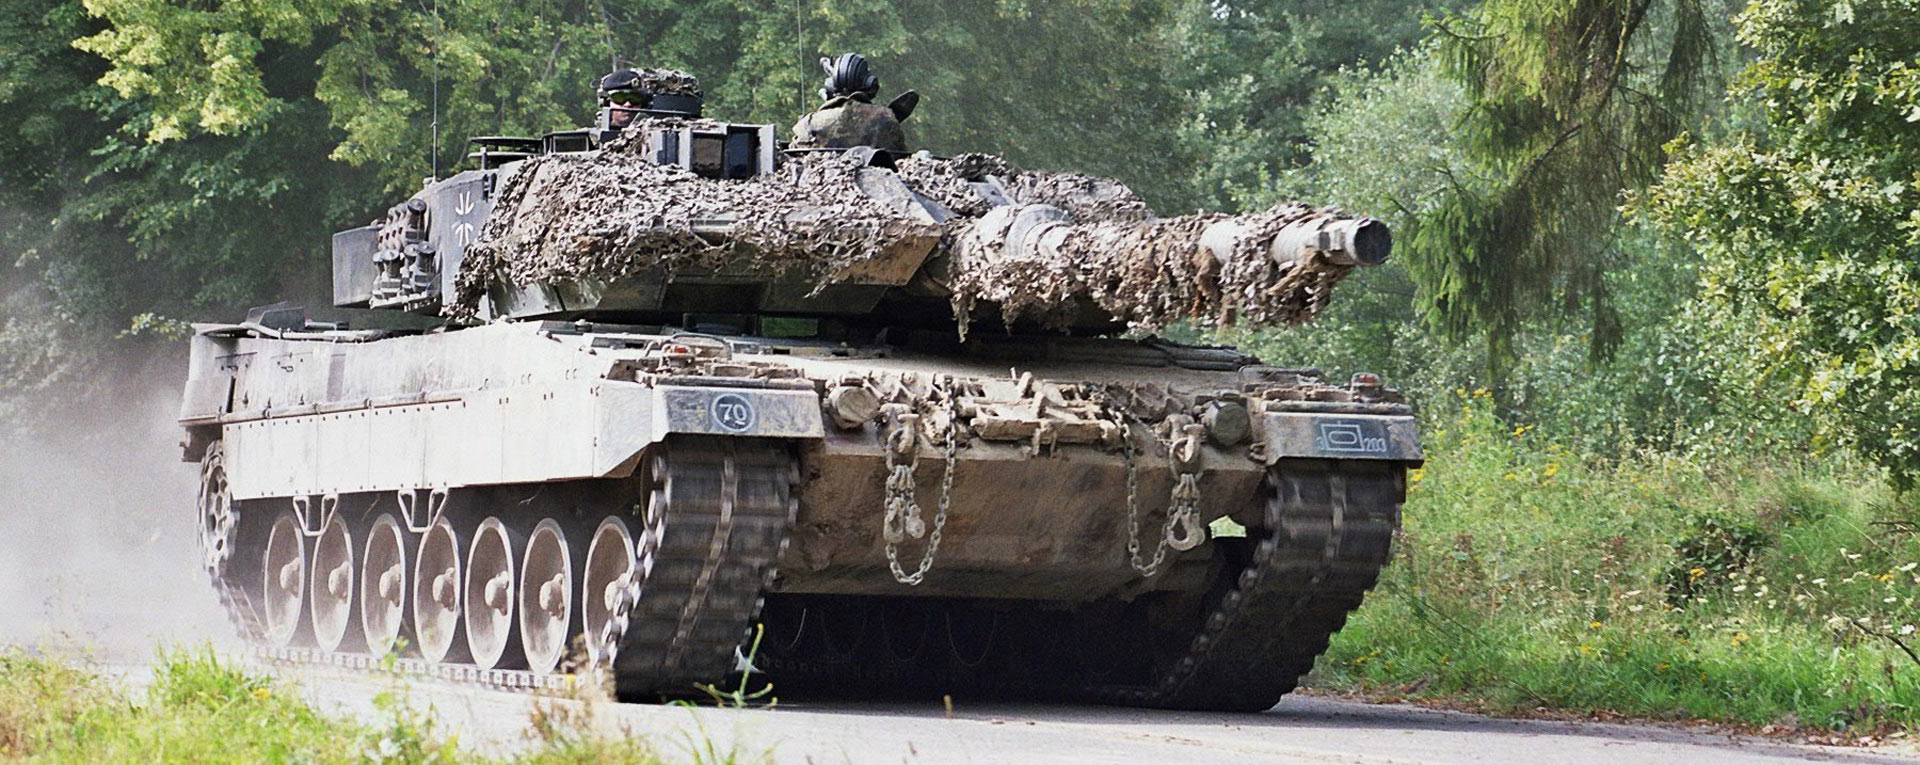 Leopard-2-A6-KMW-001